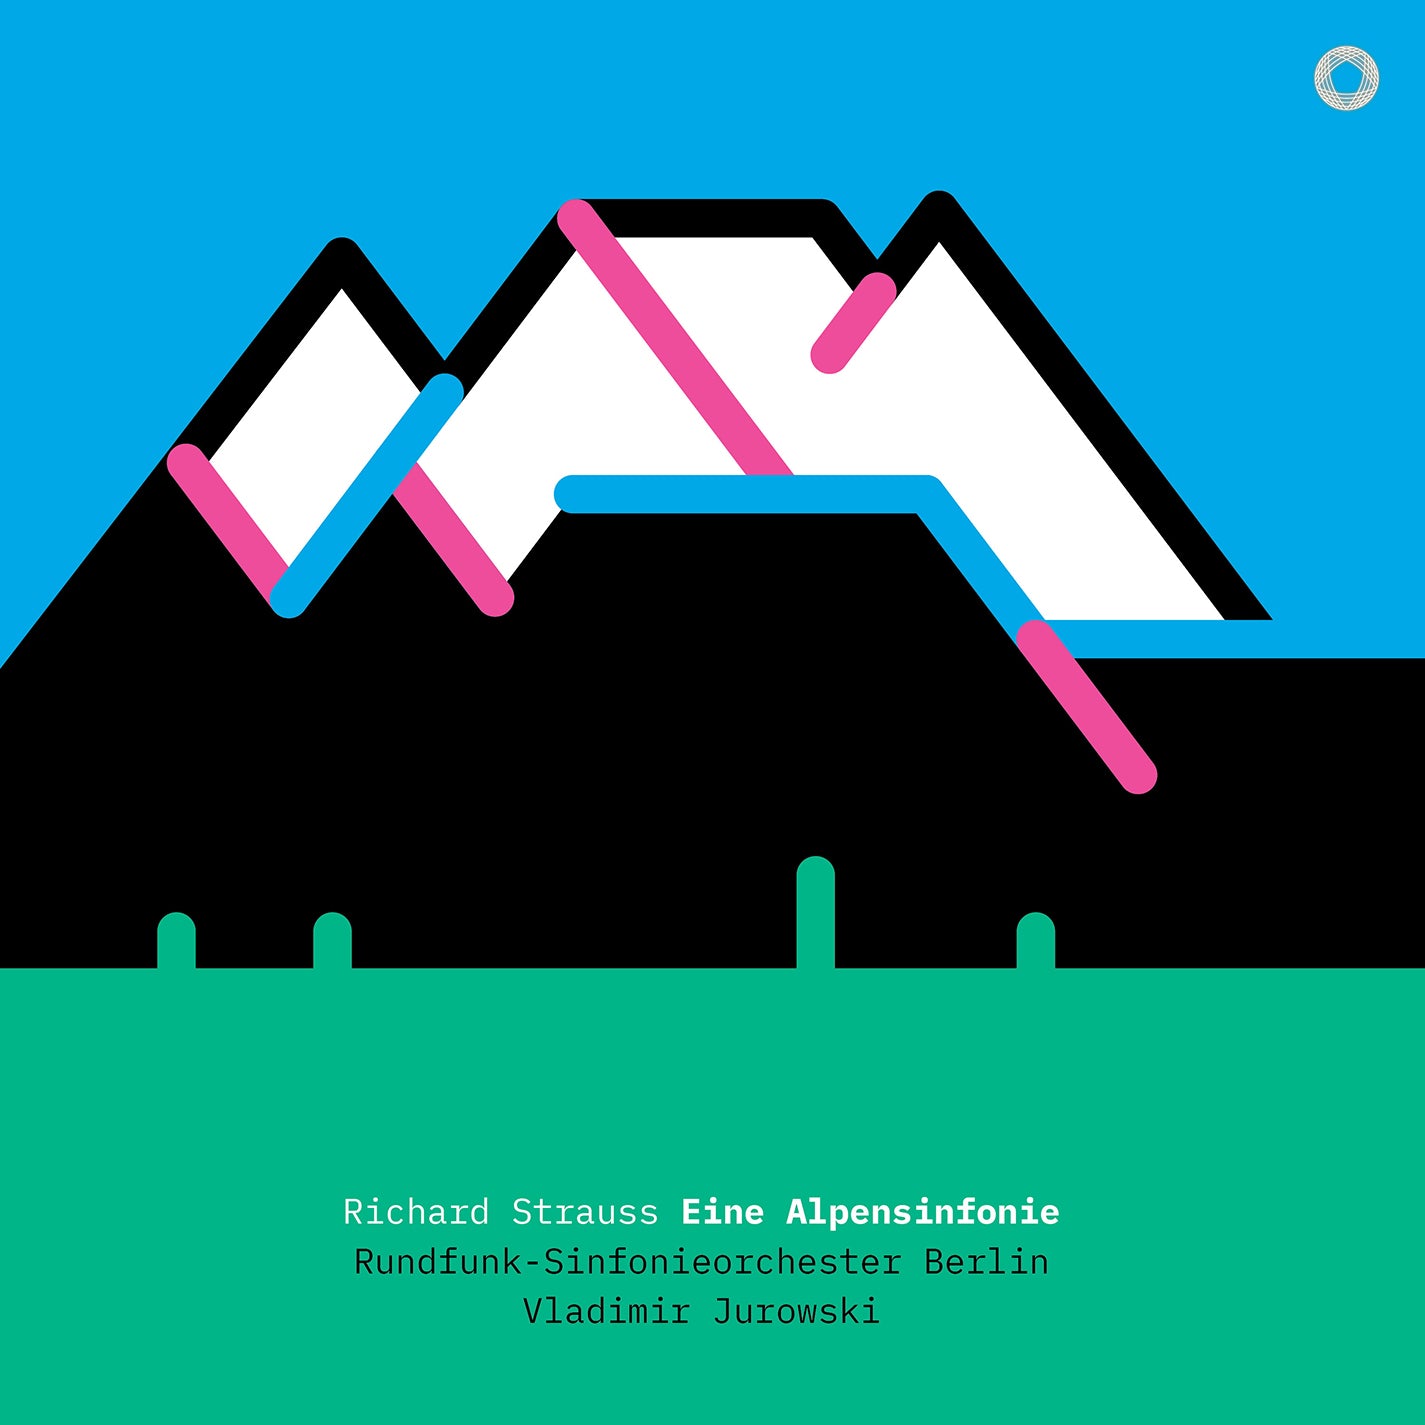 R. Strauss: Eine Alpensinfonie on Vinyl / Jurowski, RSO Berlin